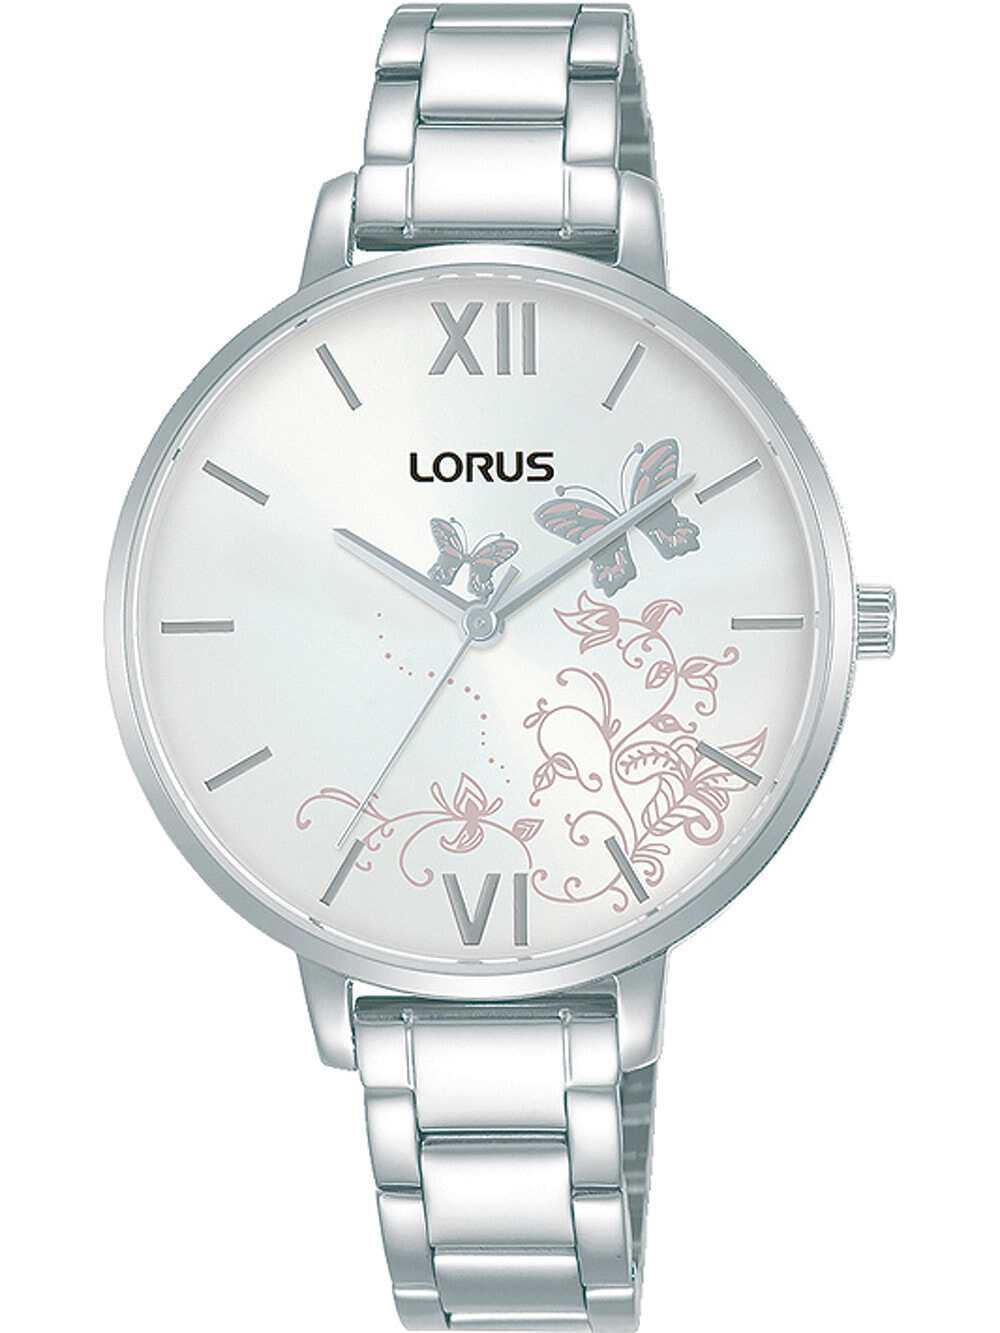 Женские наручные кварцевые часы LORUS ремешок из нержавеющей стали. Водонепроницаемость-3 АТМ. Прочное, минеральное стекло защищает ваши часы от непроизвольных травм.